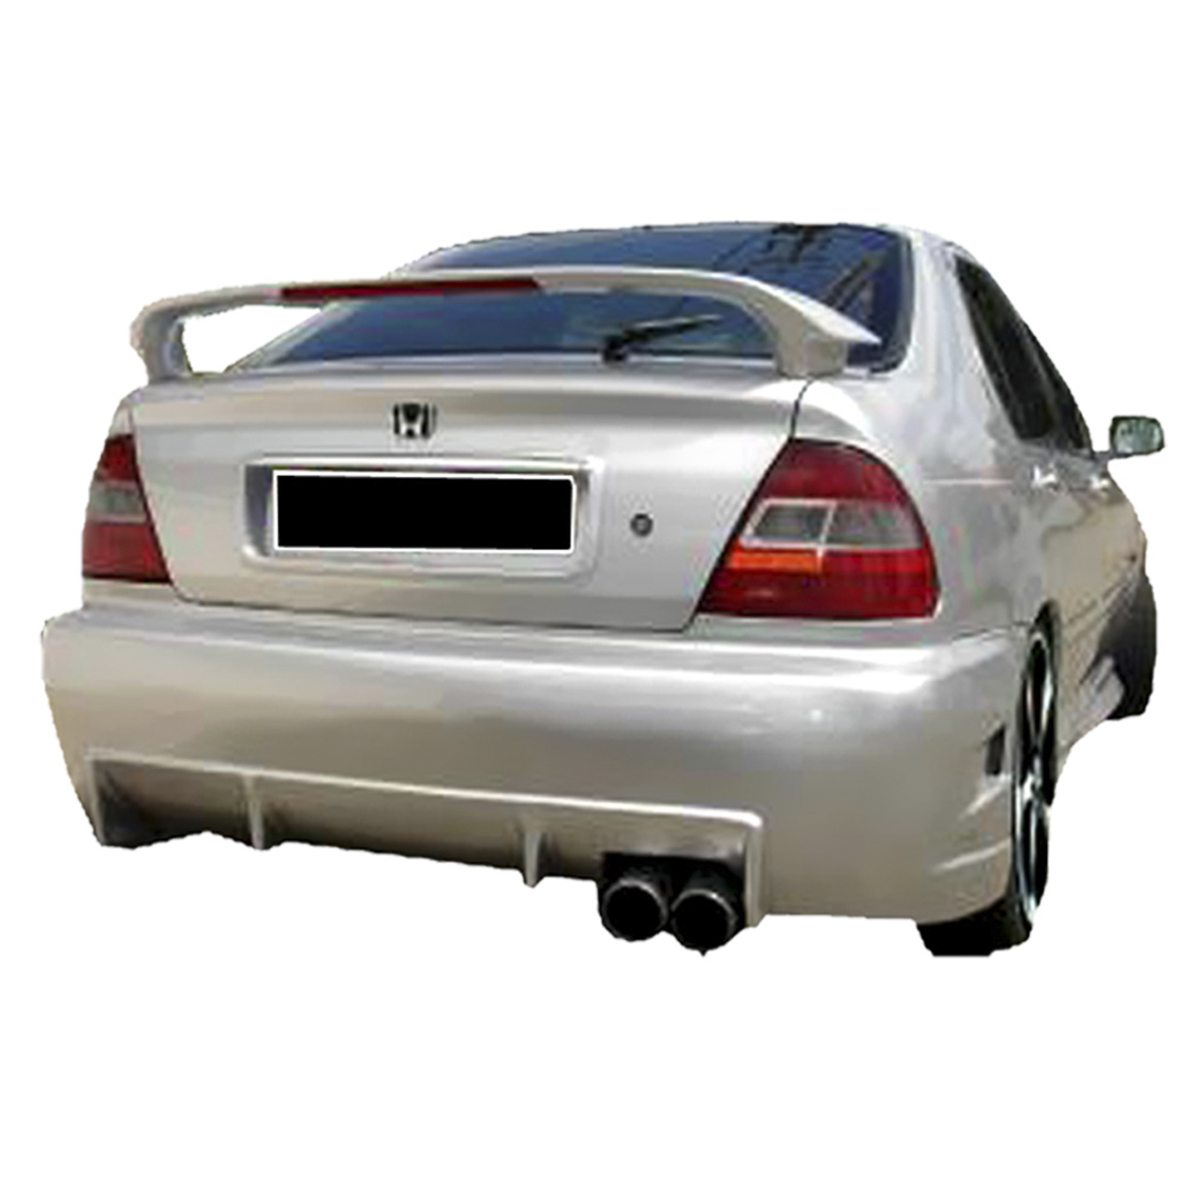 Honda-Civic-98-Yacuza-Tras-PCR025